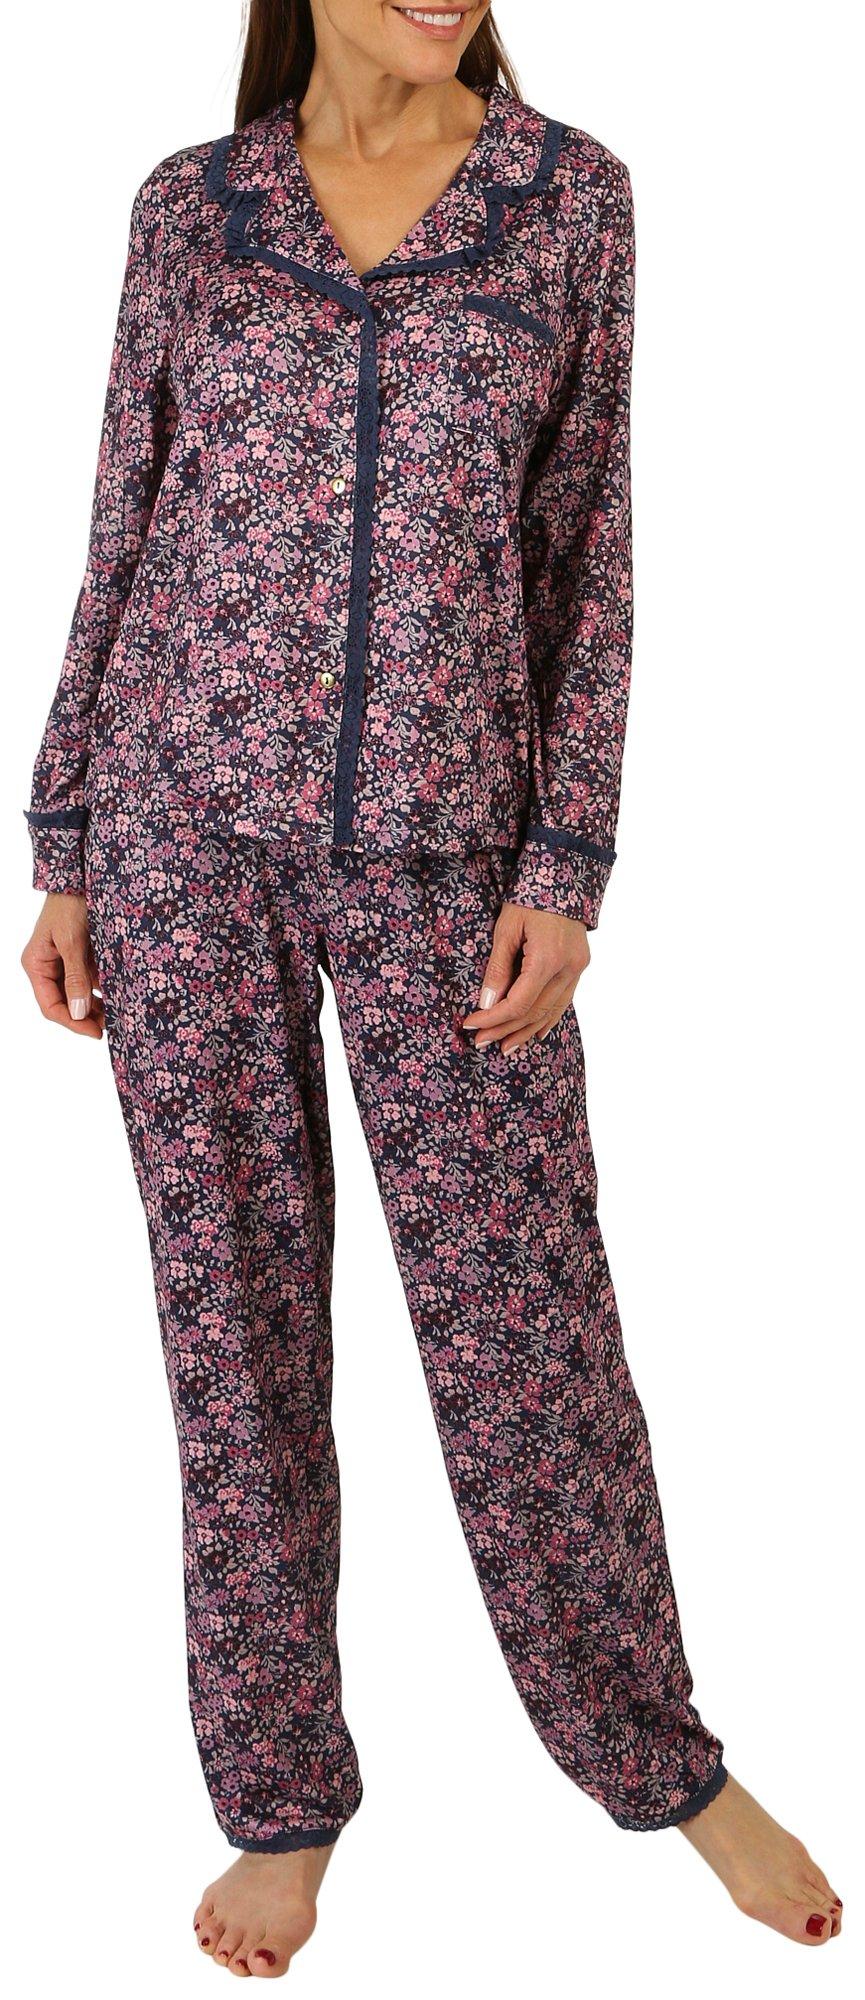 Womens 2-Pc. Floral Pajama Set